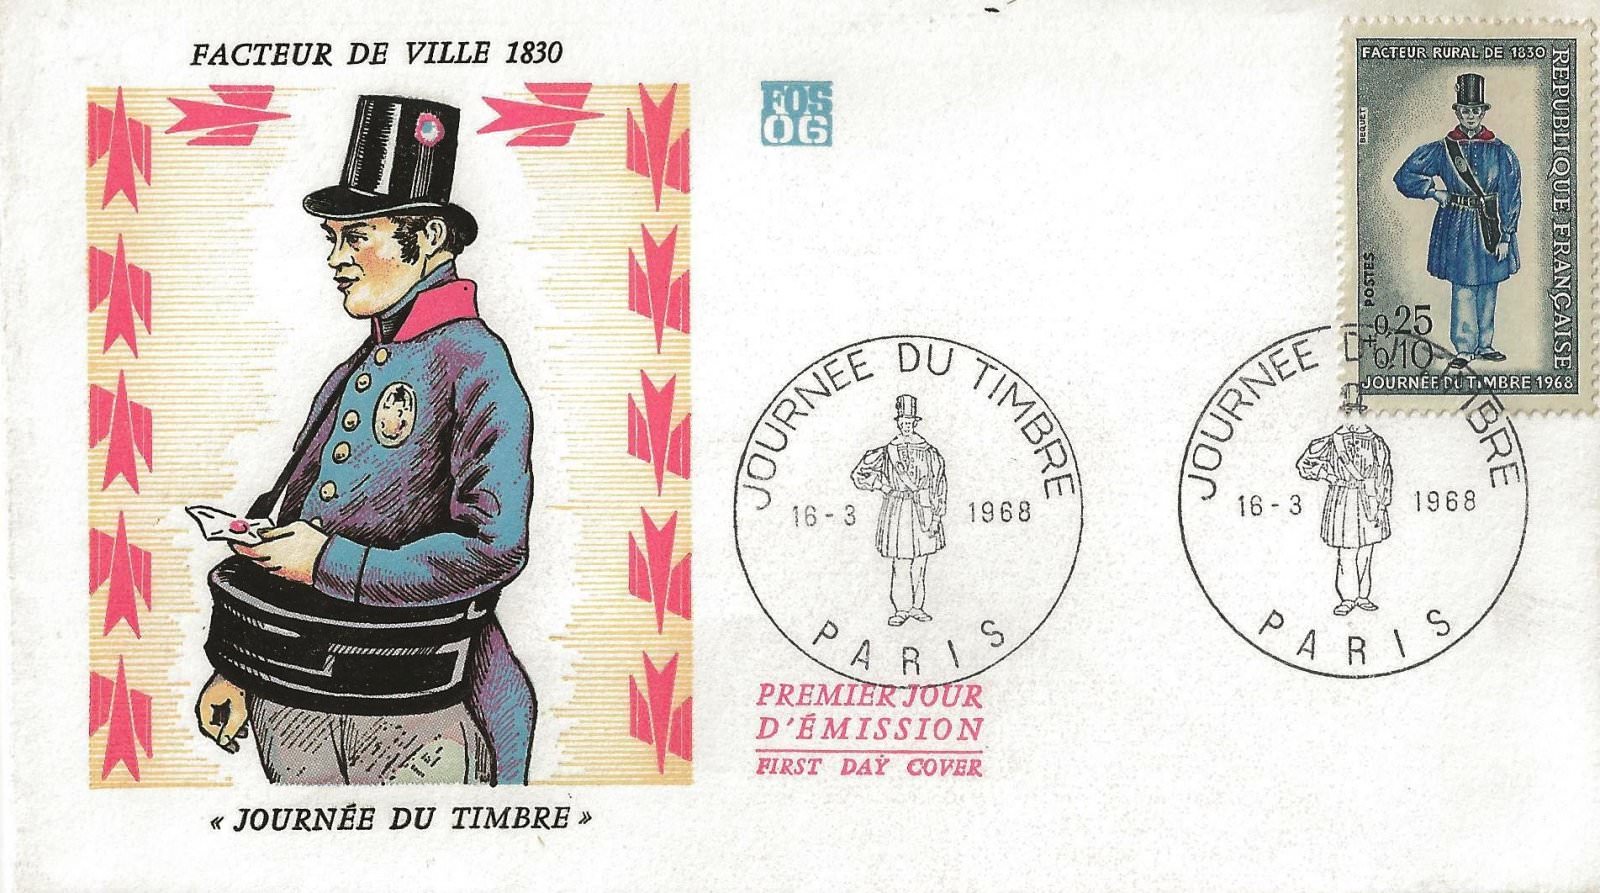 1968 journee du timbre